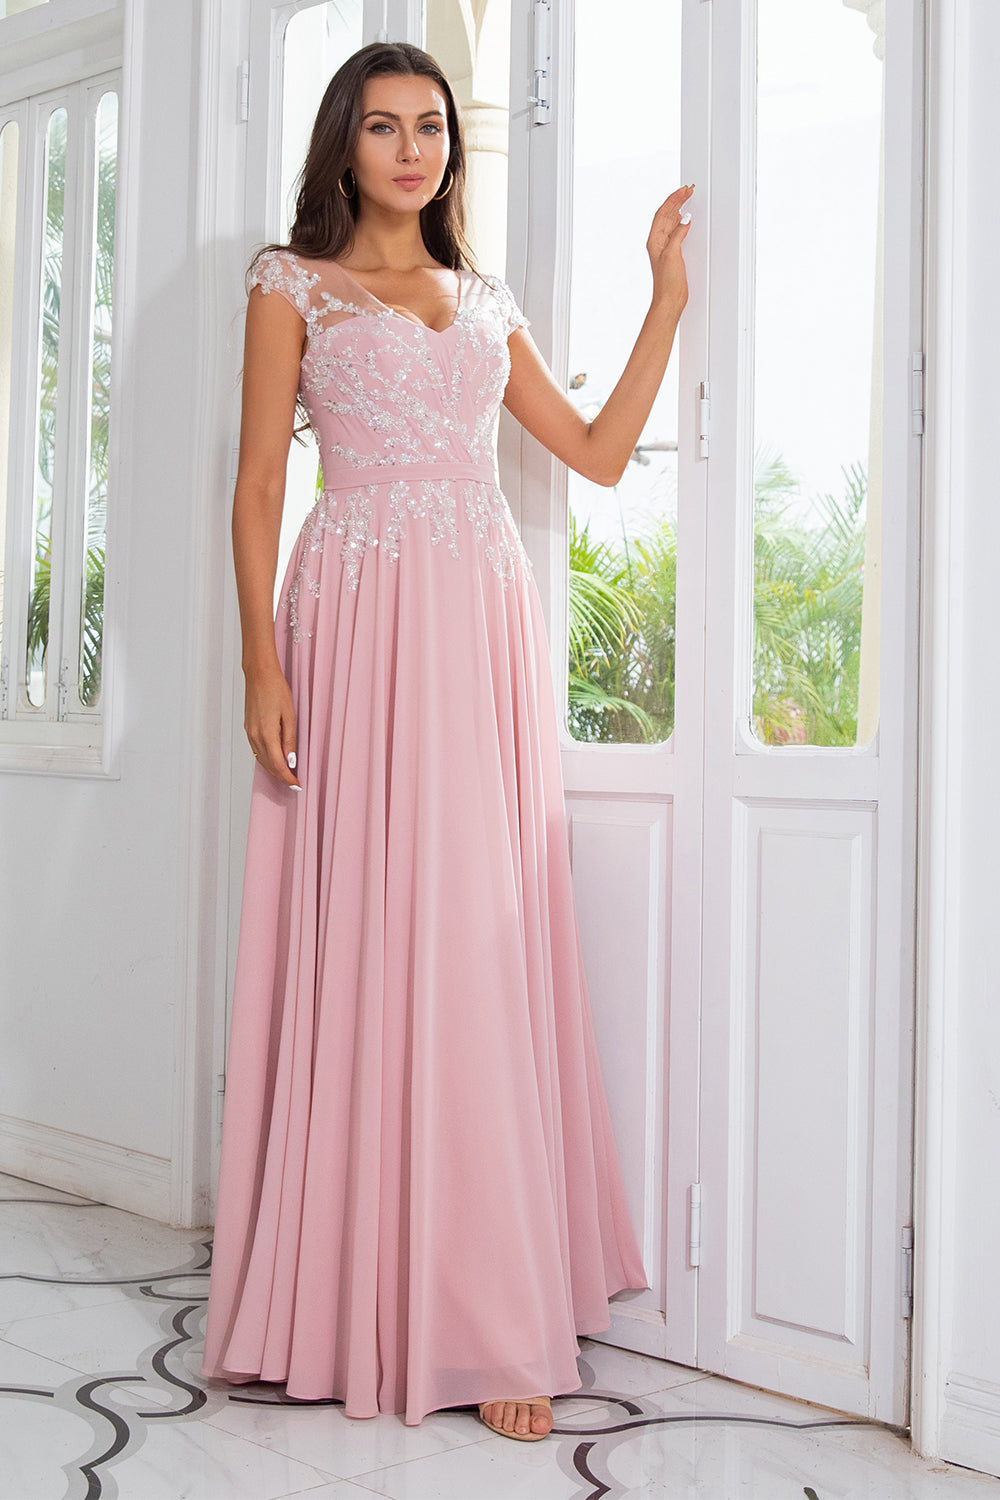 Blush Pink Evening Dresses Beaded Wedding Guest Dress FD1292